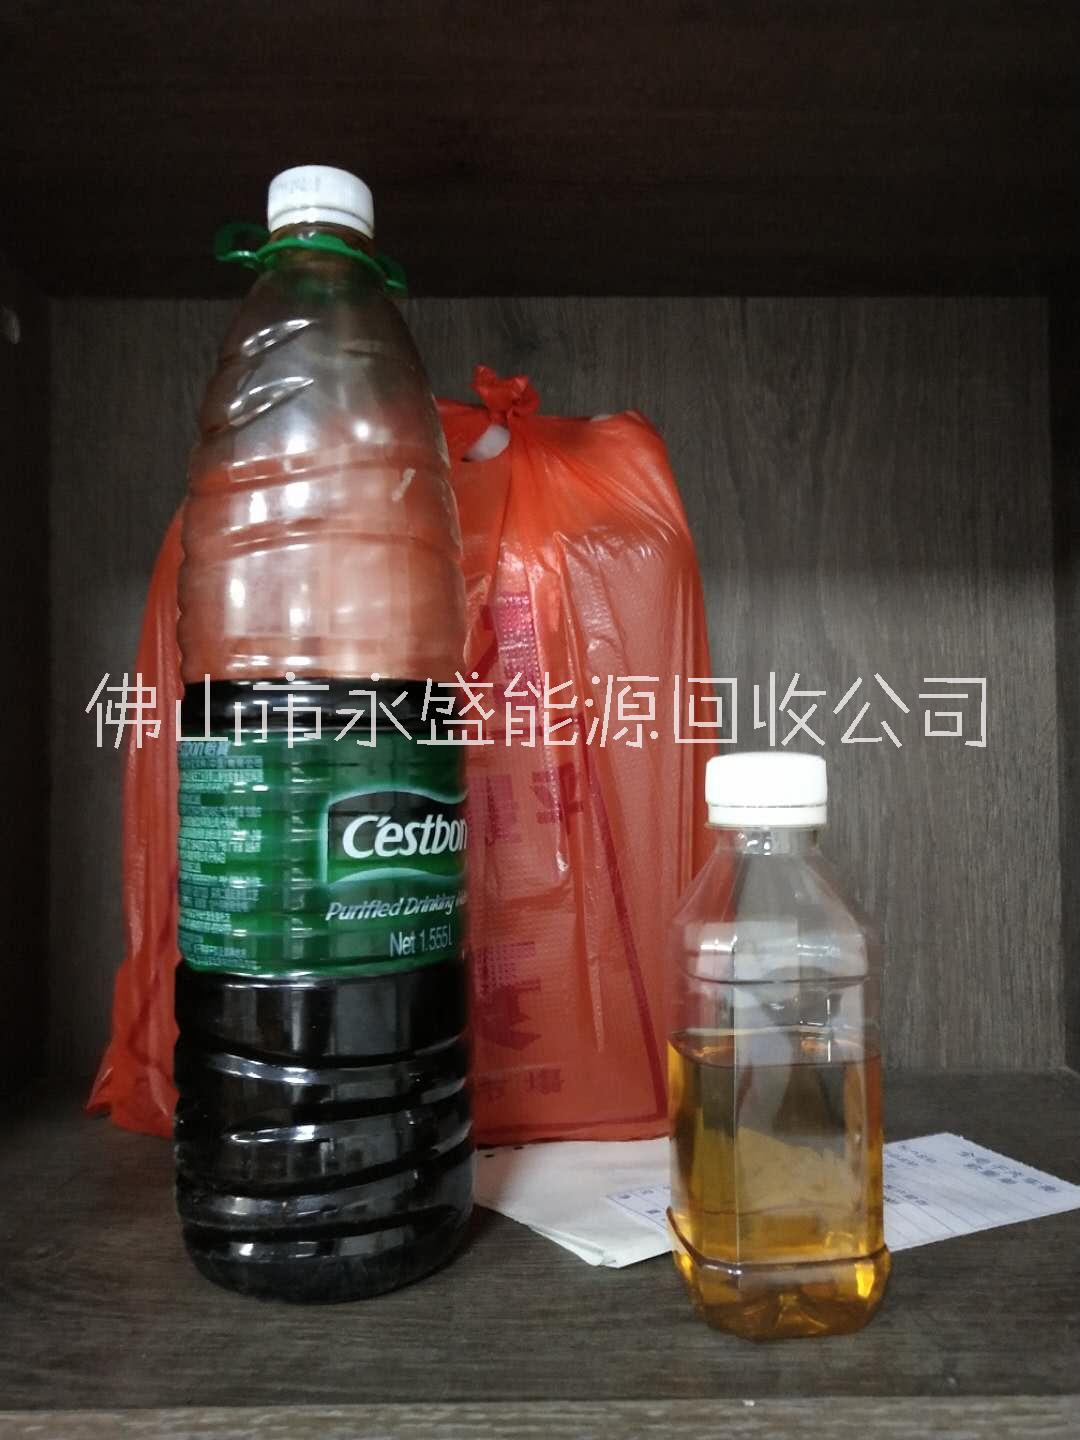 广东回收工业废油广东回收工业废油电话 广东回收工业废油